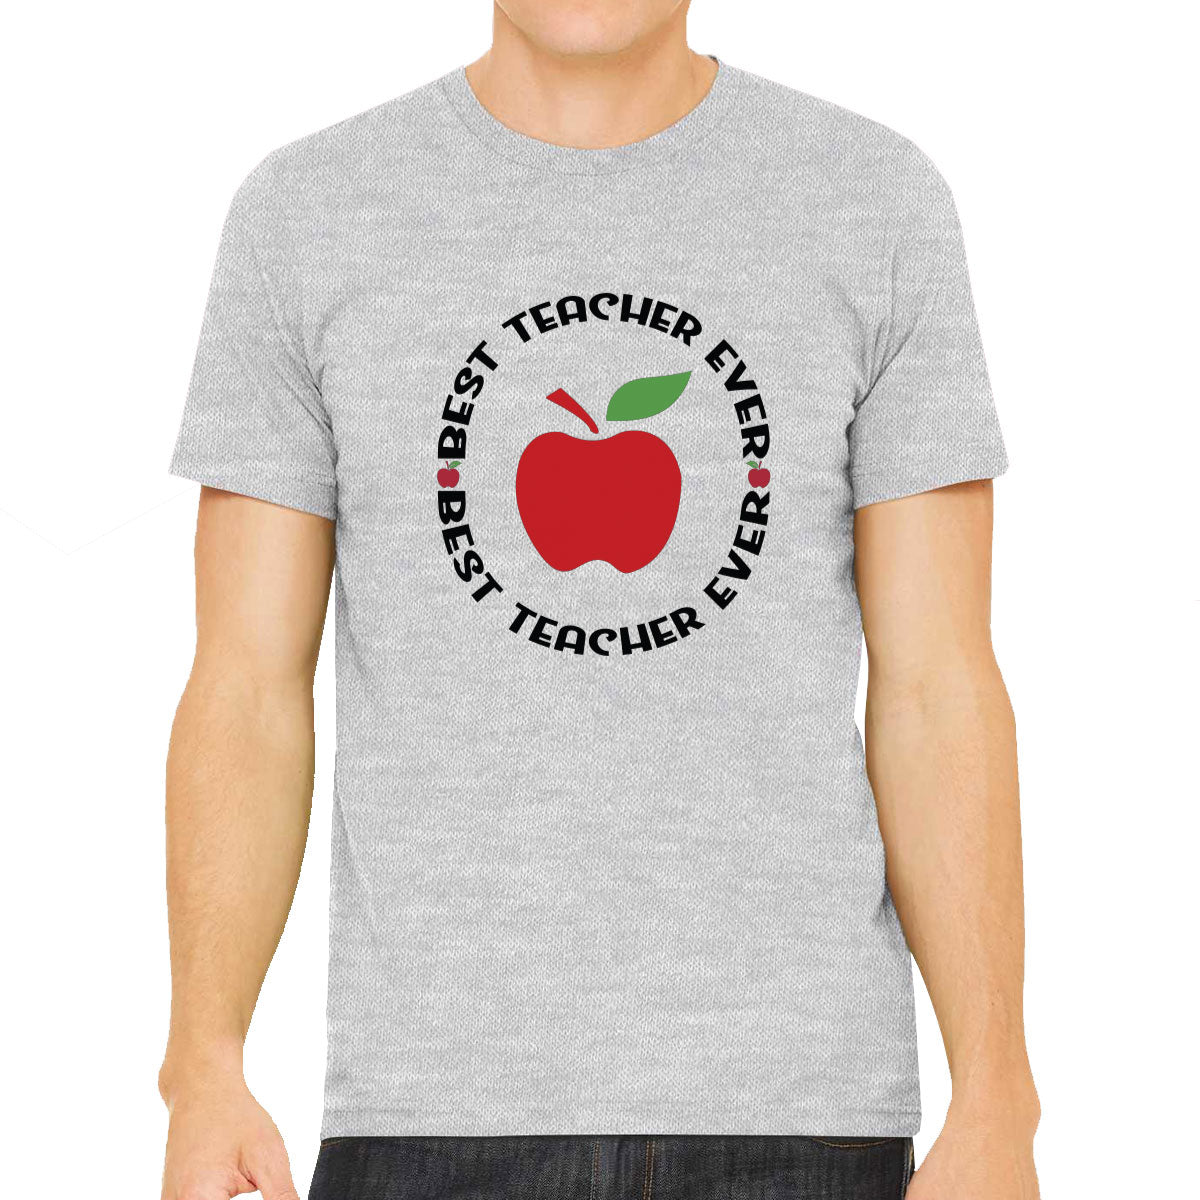 Best Teacher Ever Men's T-shirt